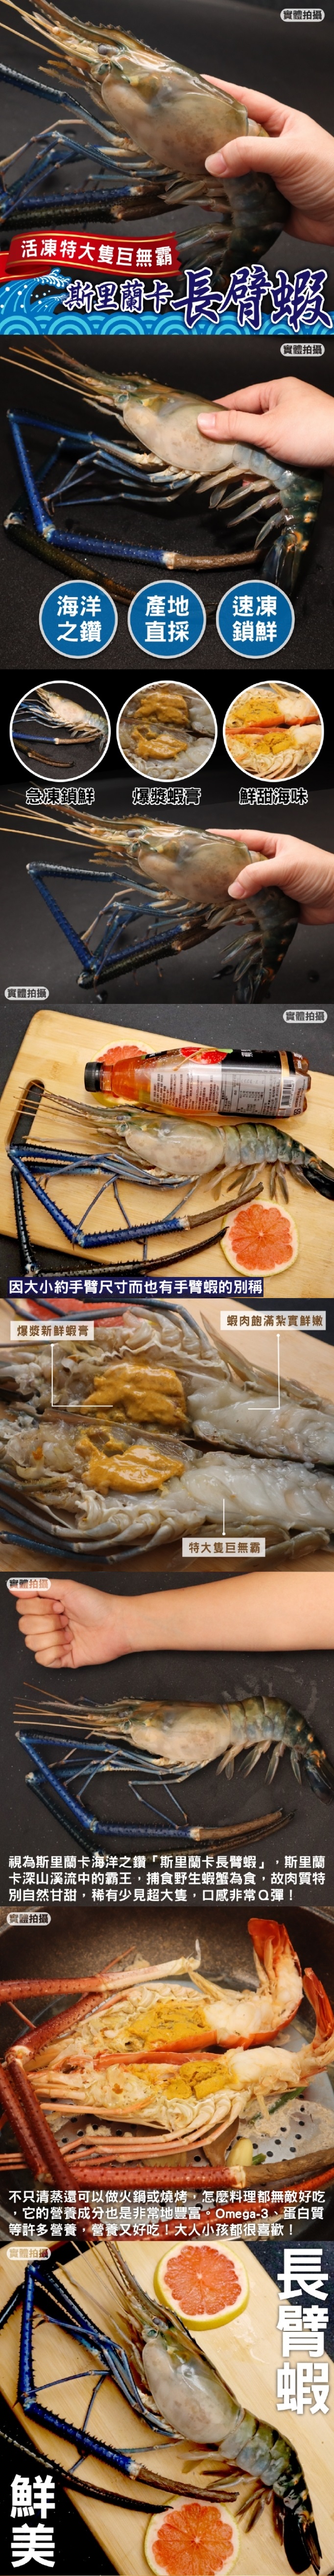 【三頓飯】巨無霸斯里蘭卡淡水長臂蝦 450g±10%/隻